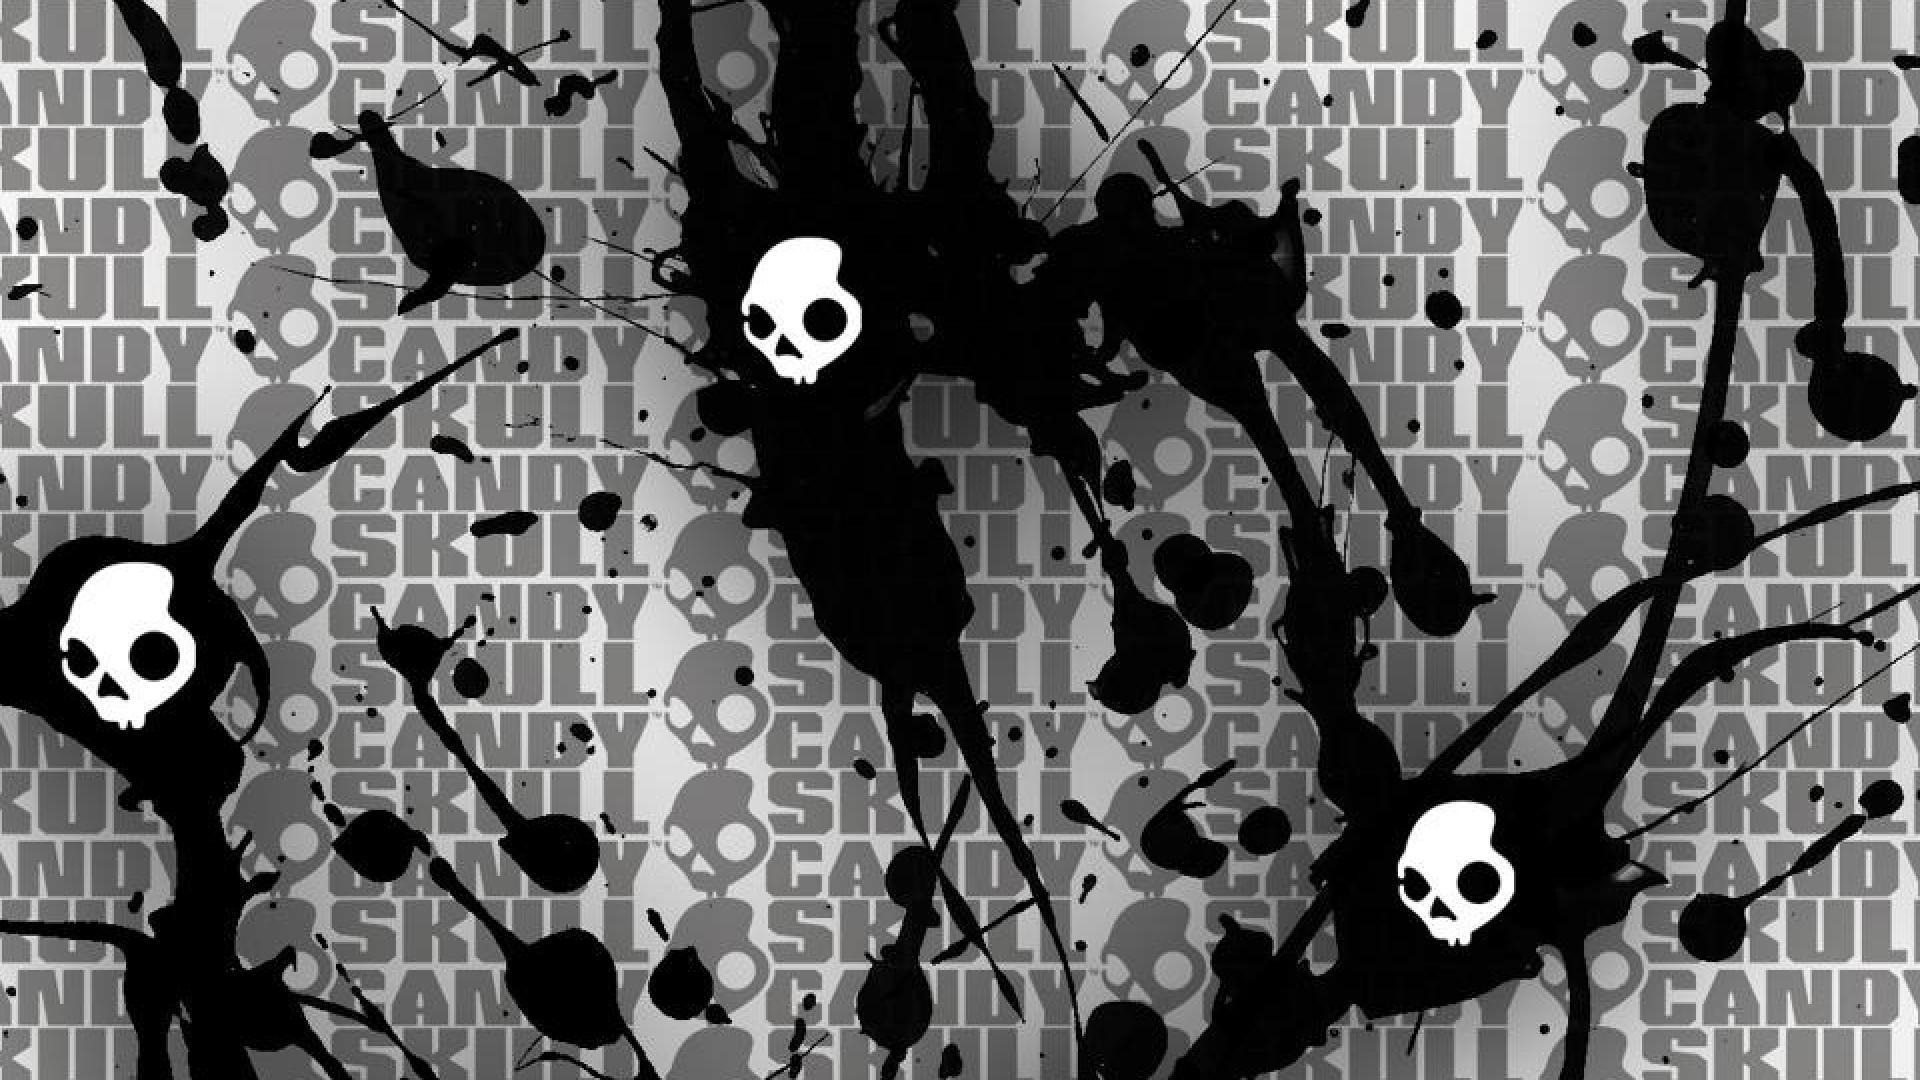 Skullcandy Wallpaper, Gallery of 38 Skullcandy Background